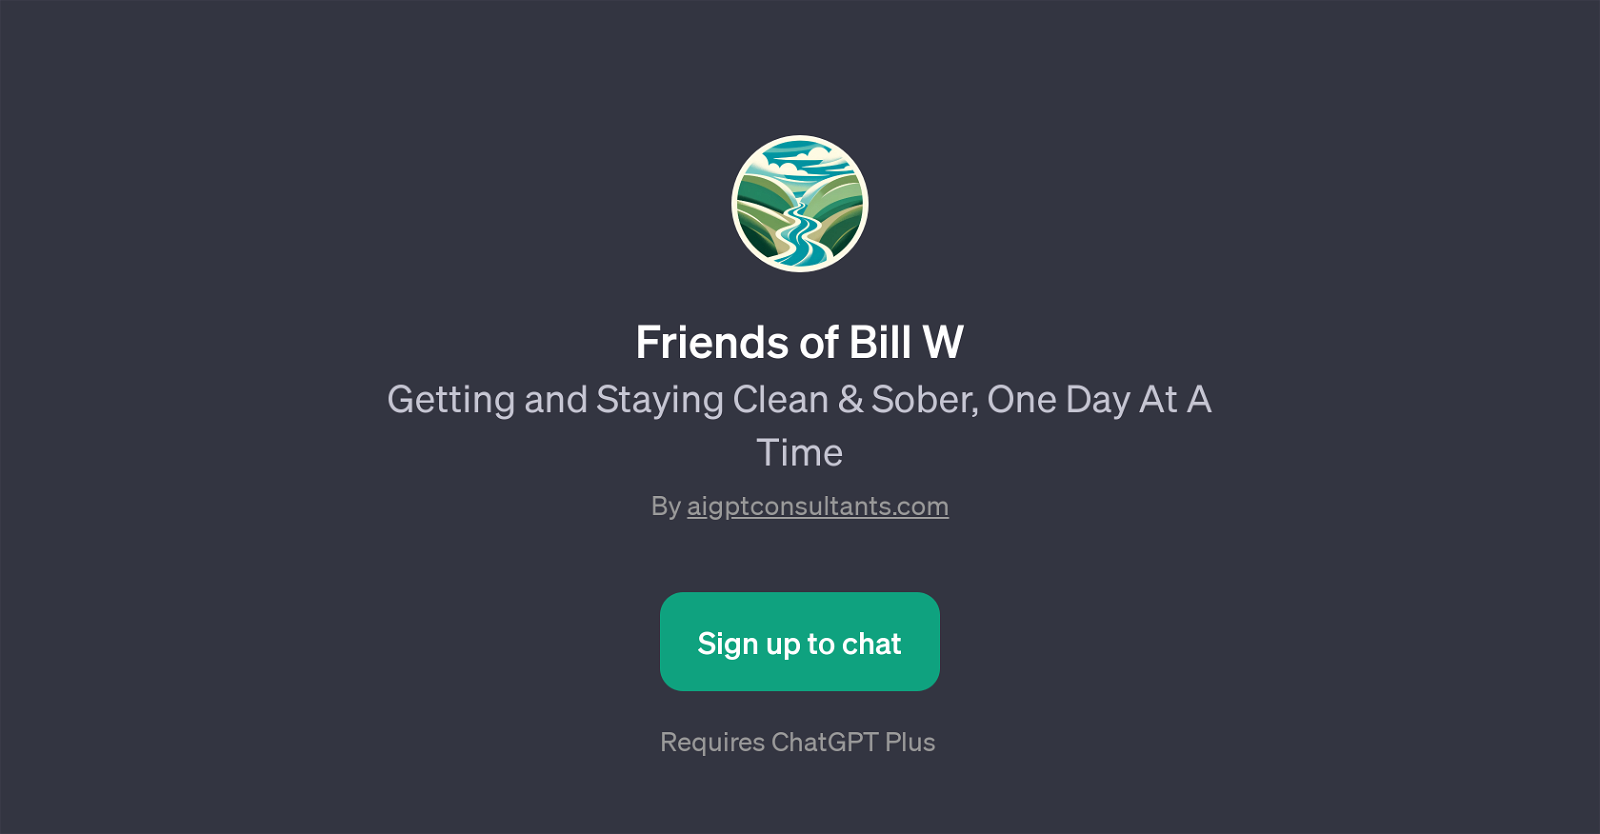 Friends of Bill W website